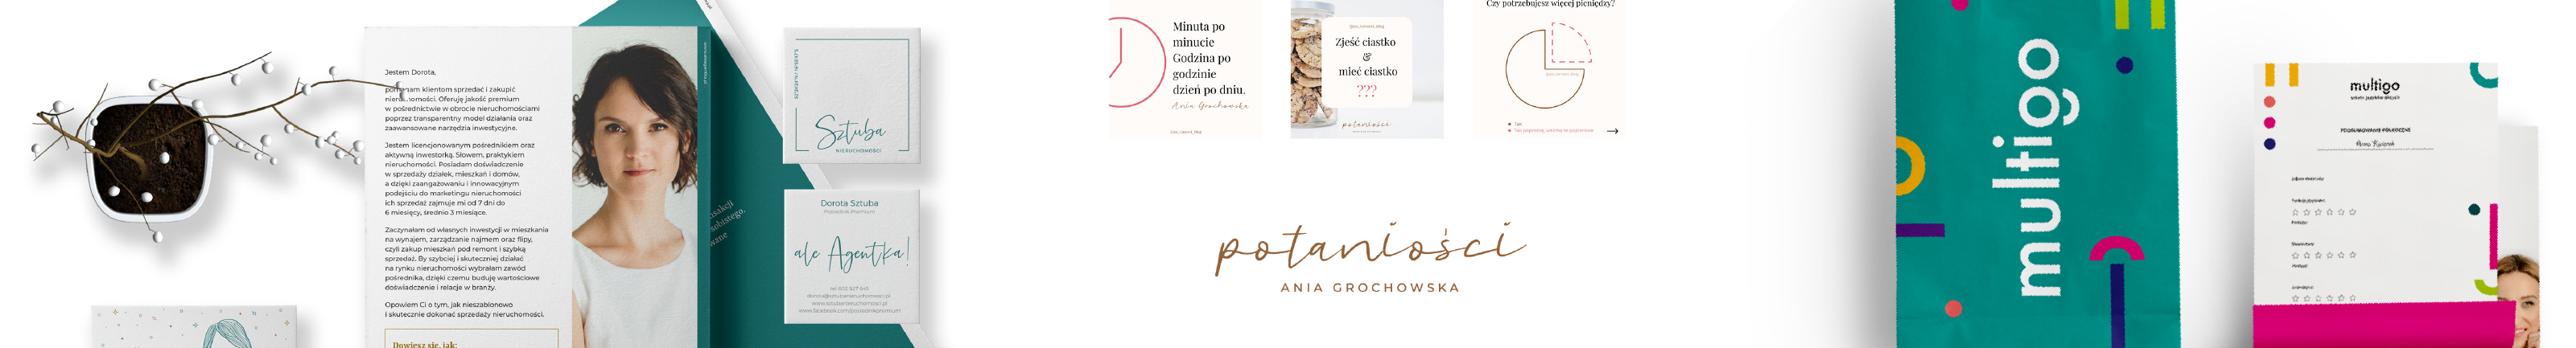 Profil-Banner von Dorota Zborowska